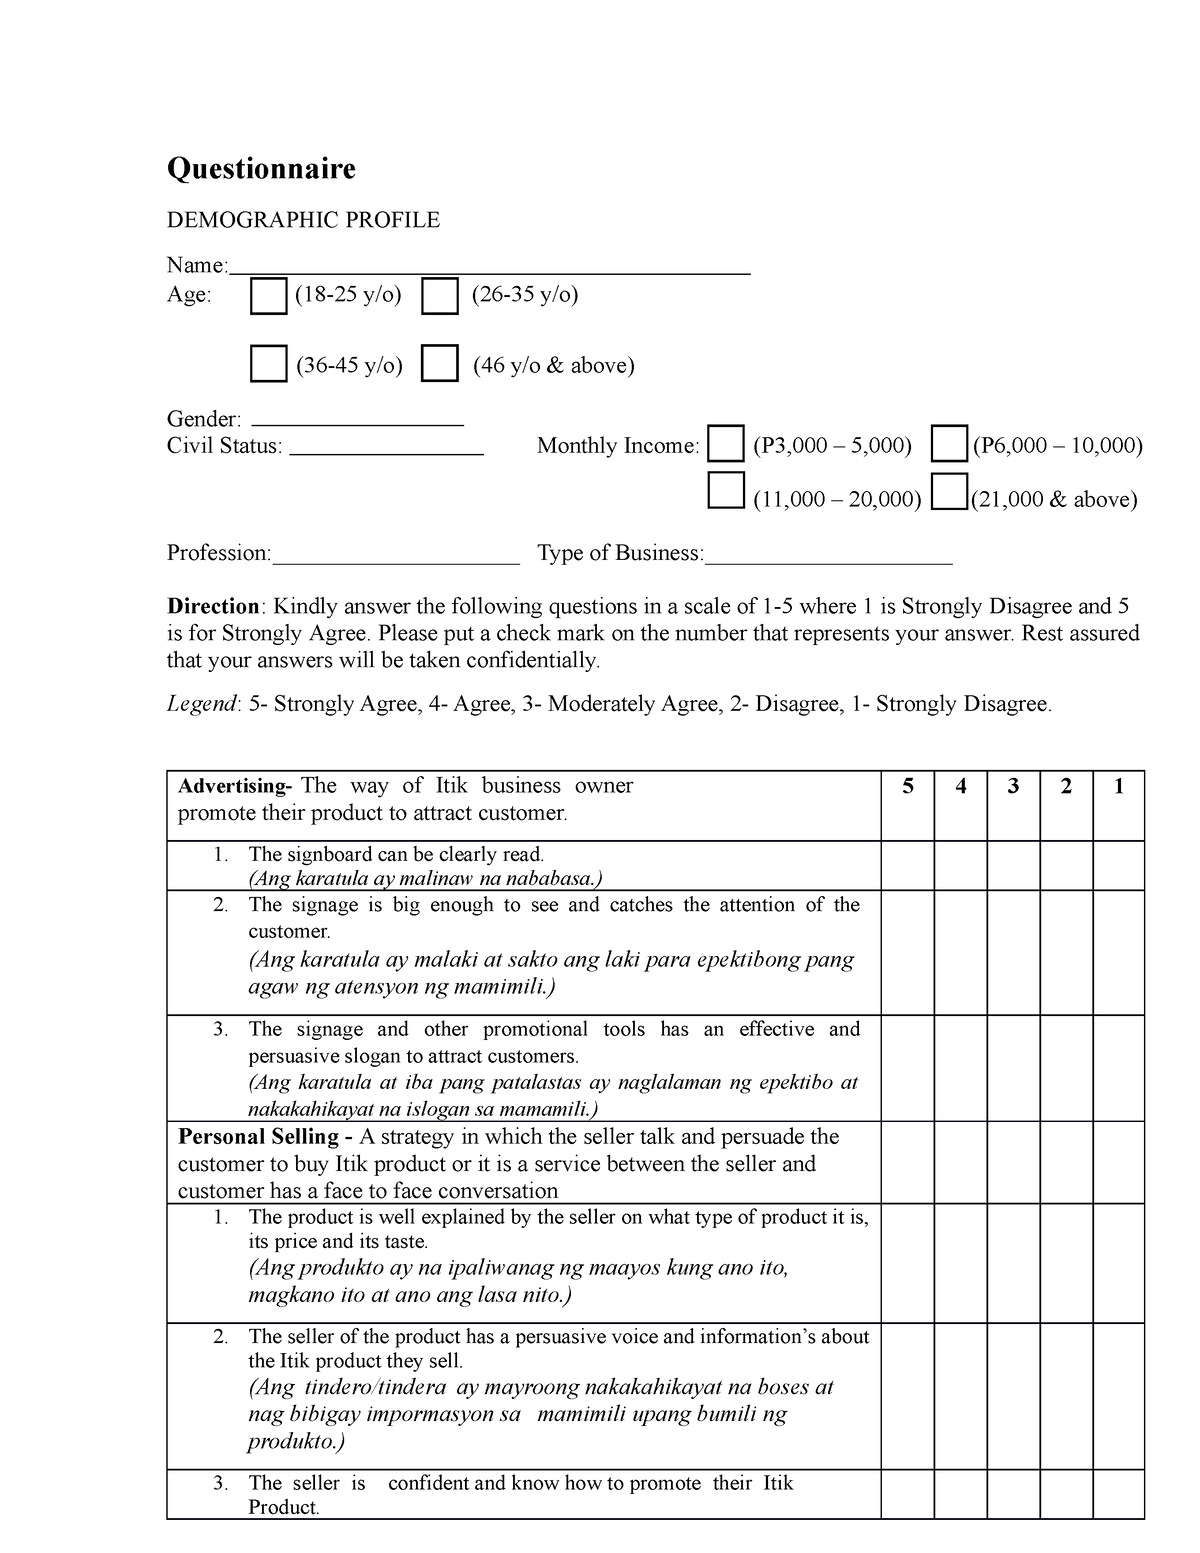 TM4D-11-Questionnaire - Questionnaire DEMOGRAPHIC PROFILE Name: Age ...